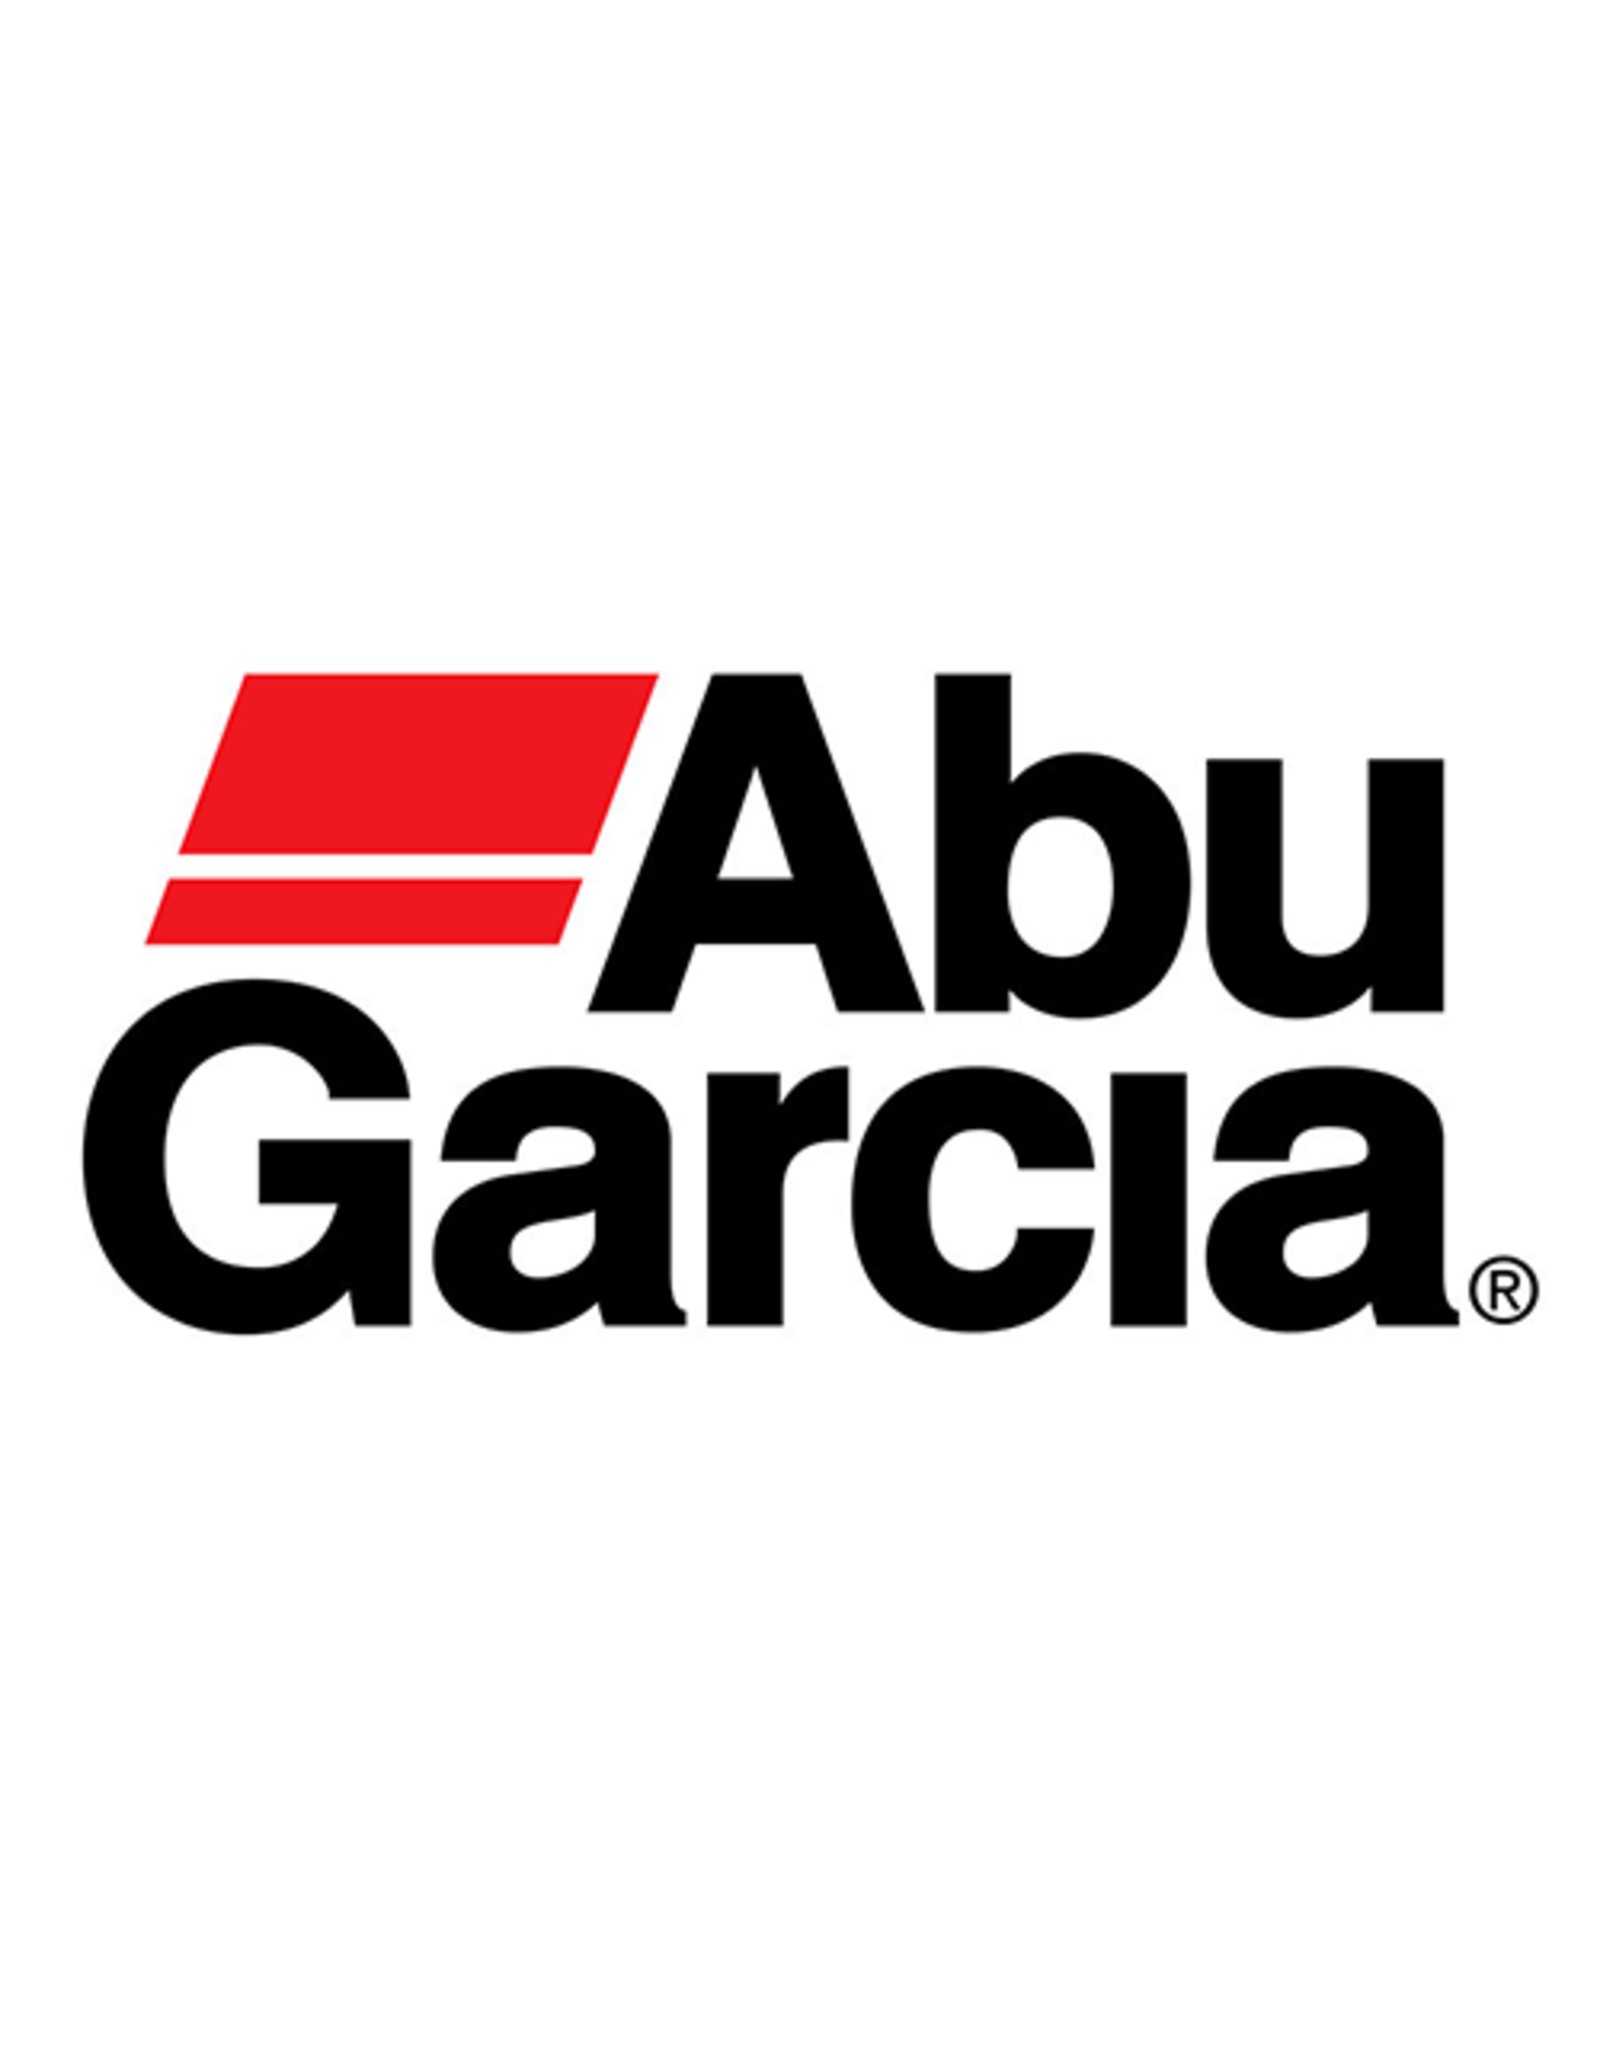 Abu Garcia 70534  HANDLE /SUB 70829